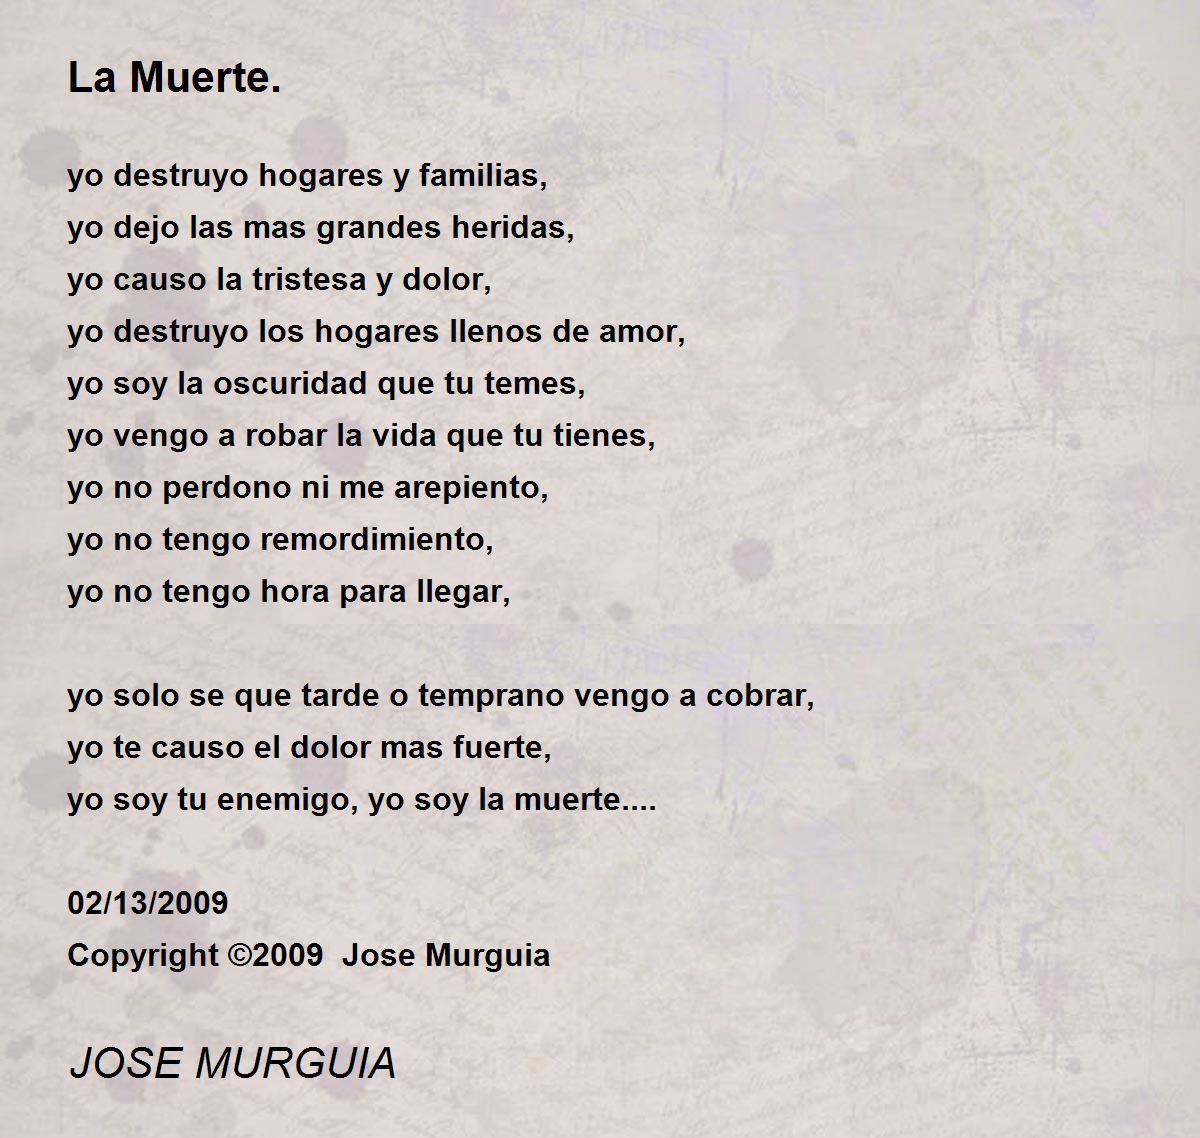 Meaning of El apareamiento de la morsa by El Cuarteto de Nos